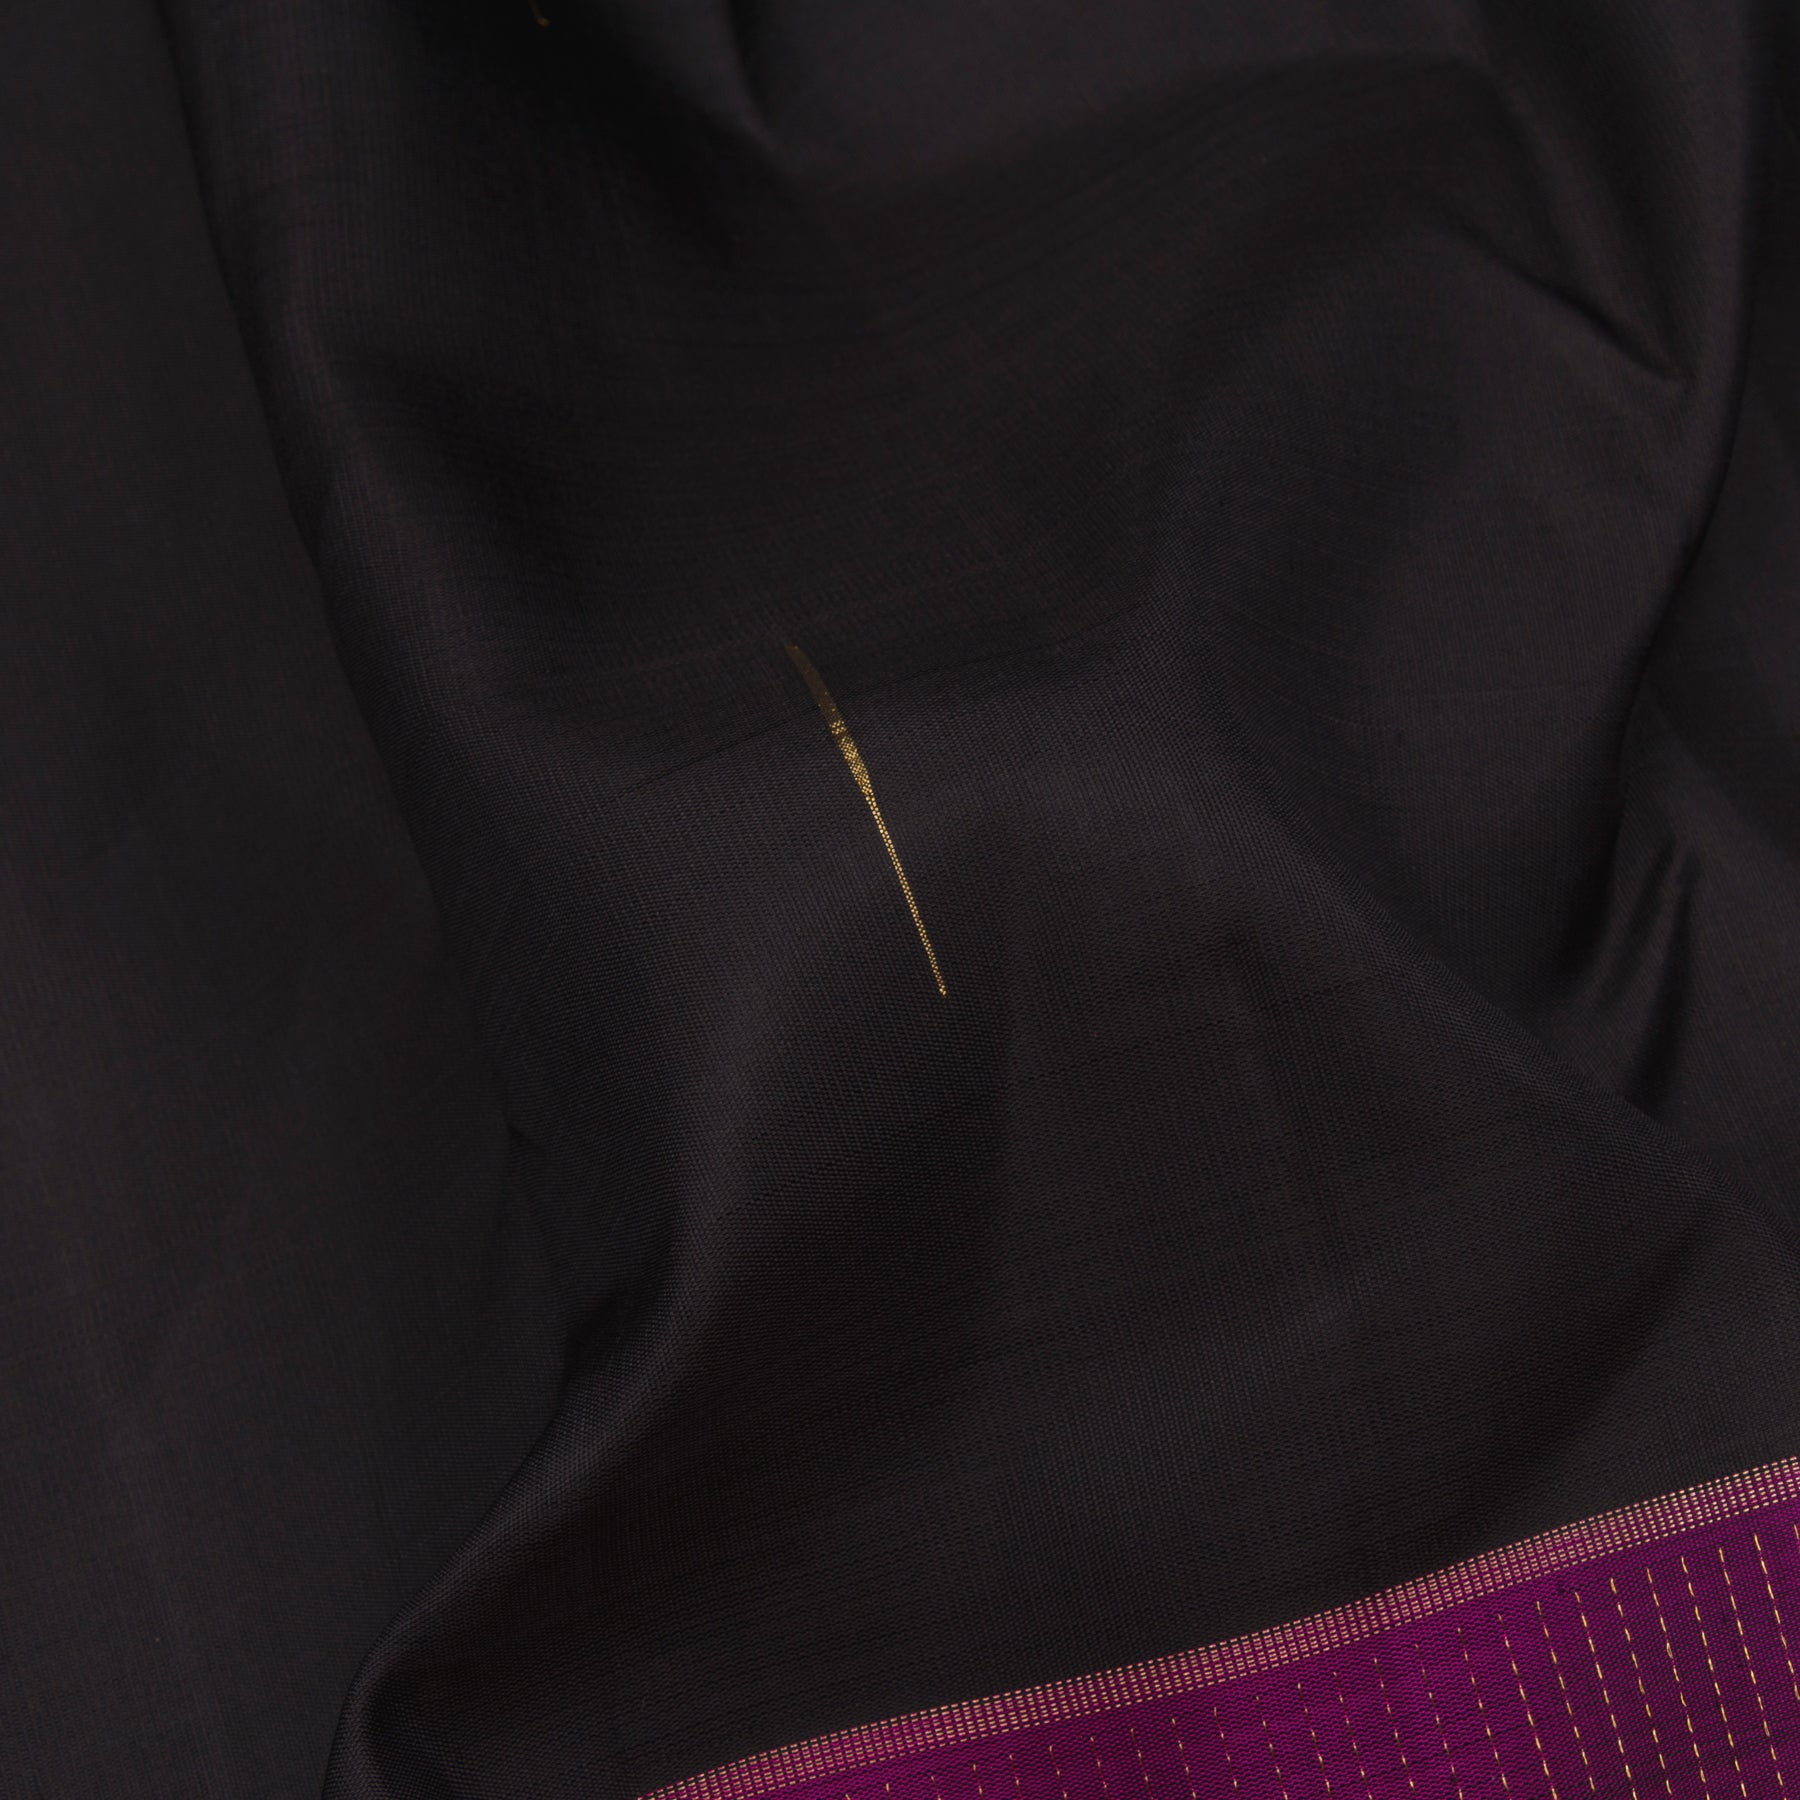 Kanakavalli Kanjivaram Silk Sari 23-599-HS001-06730 - Fabric View